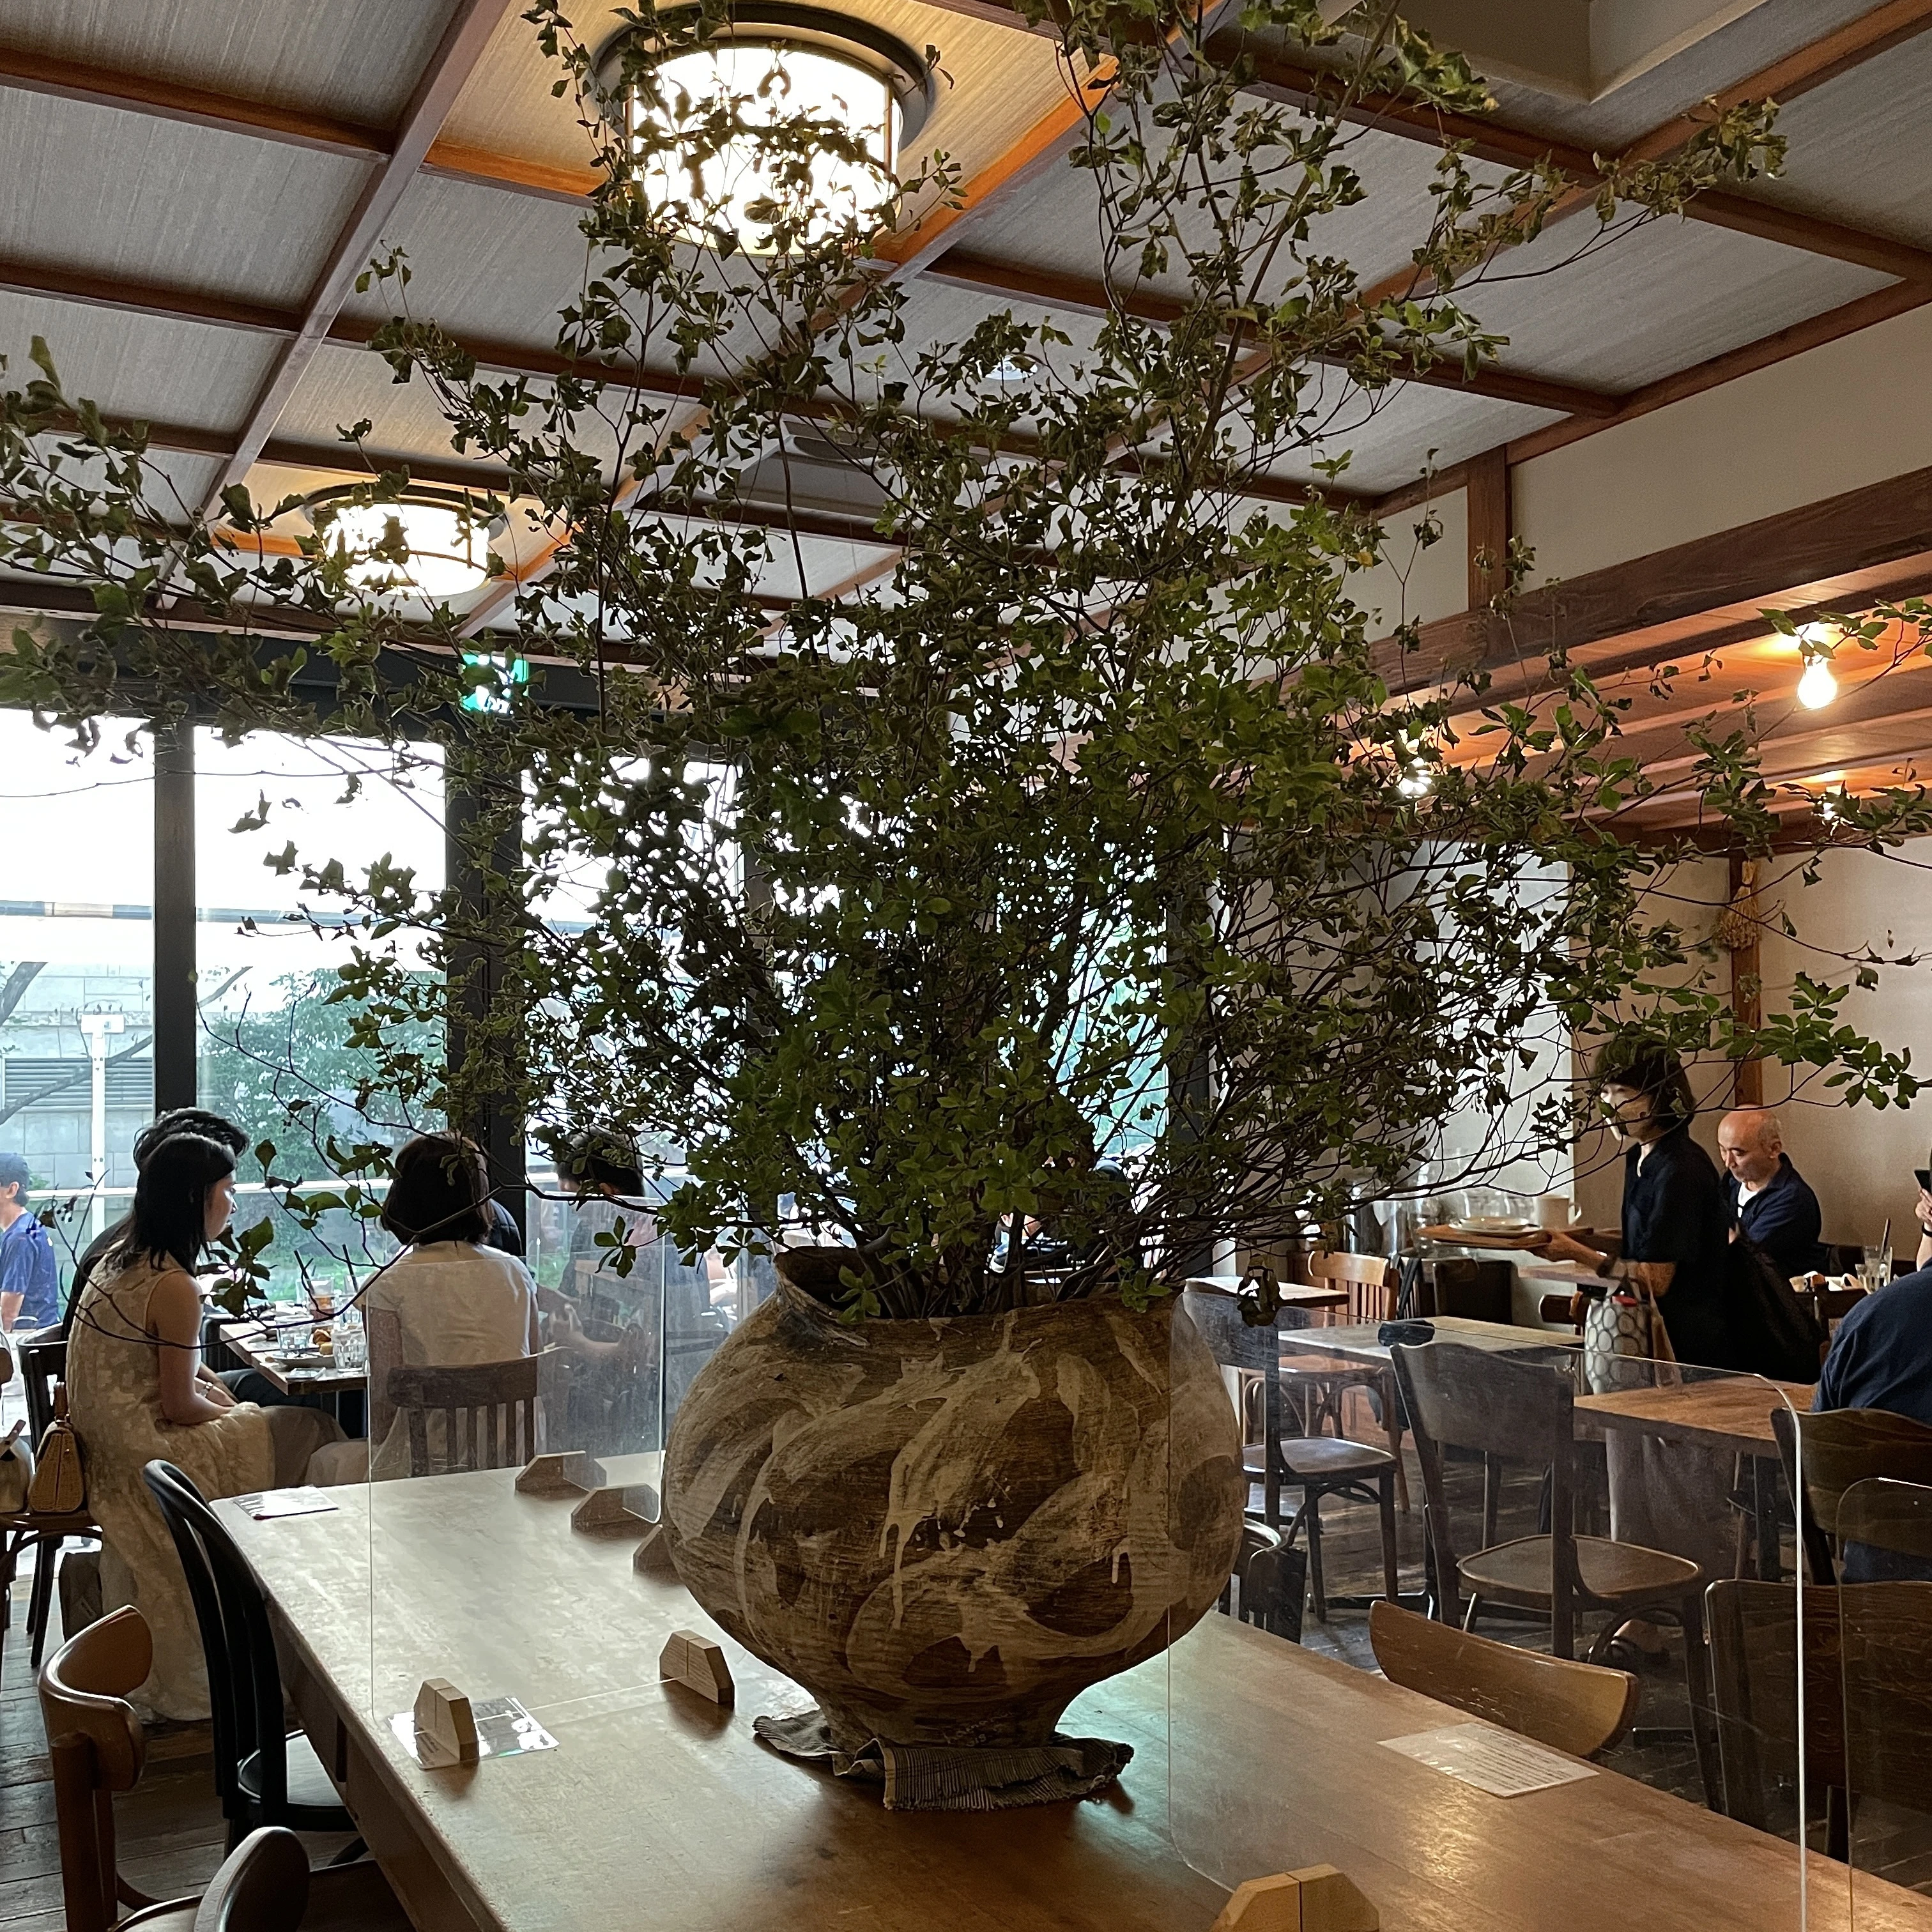 大きなダイニングテーブルには、浜名一慶氏の大壺に生けられた迫力あるグリーンが。